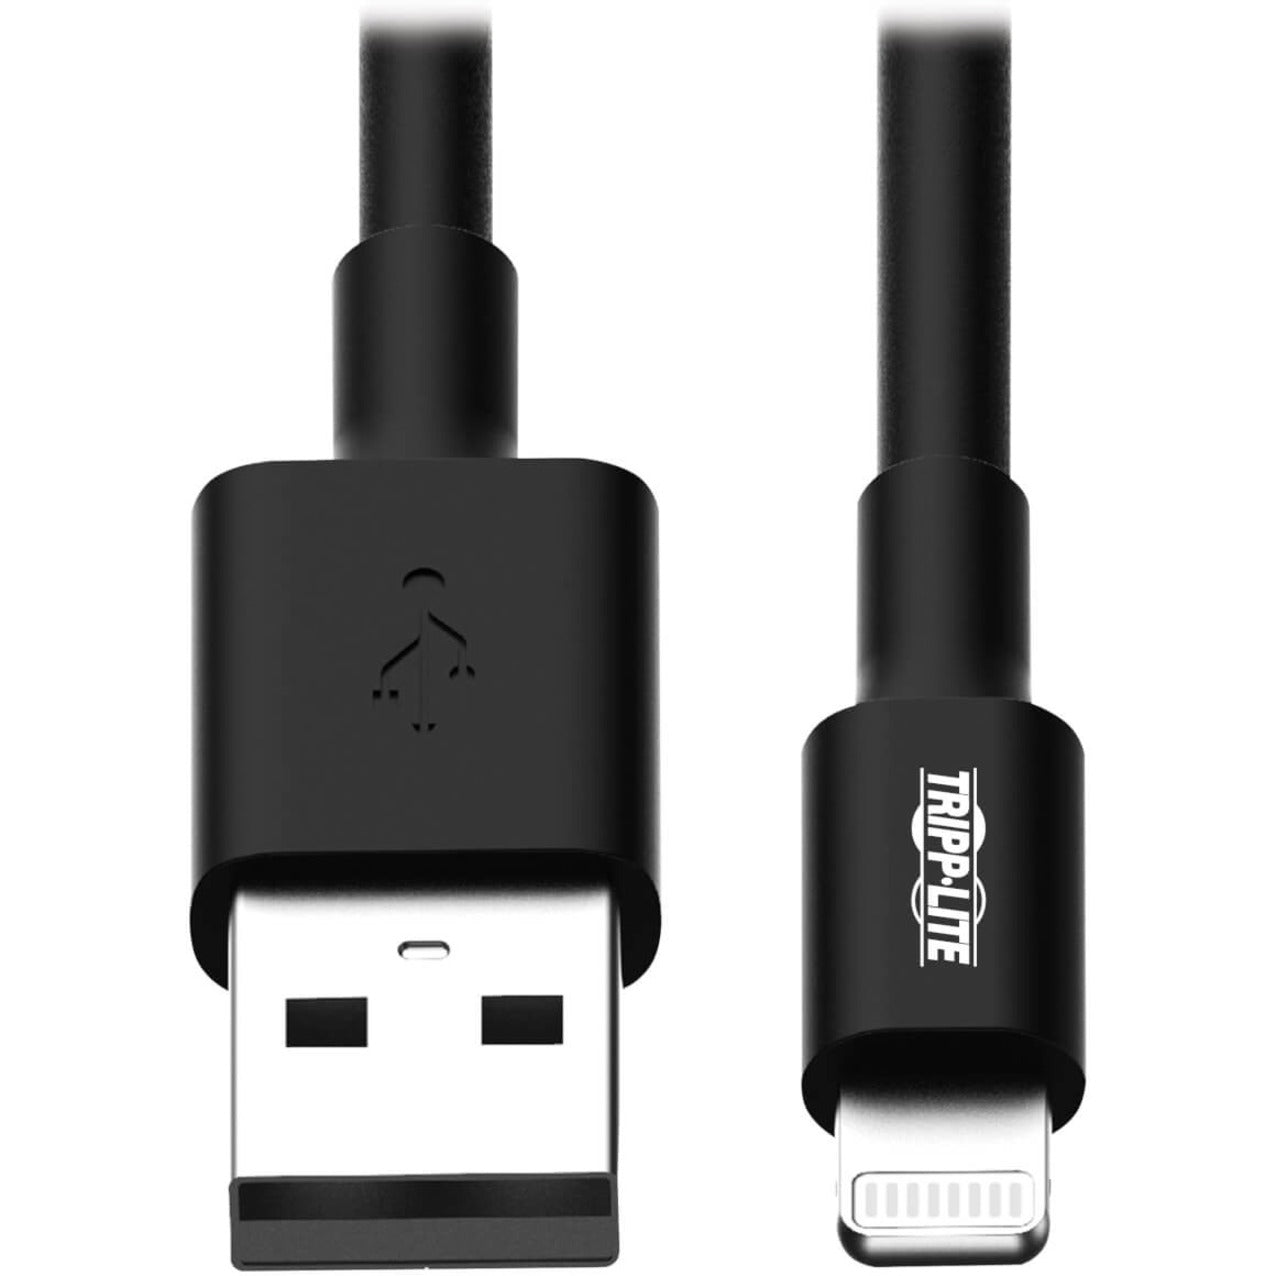 Tripp Lite トリップライト M100-006-BK 6フィート（1.8M）黒USB同期/充電ケーブル、ライトニングコネクター対応、iPhone、iPad、iPodと互換性、MFI認定